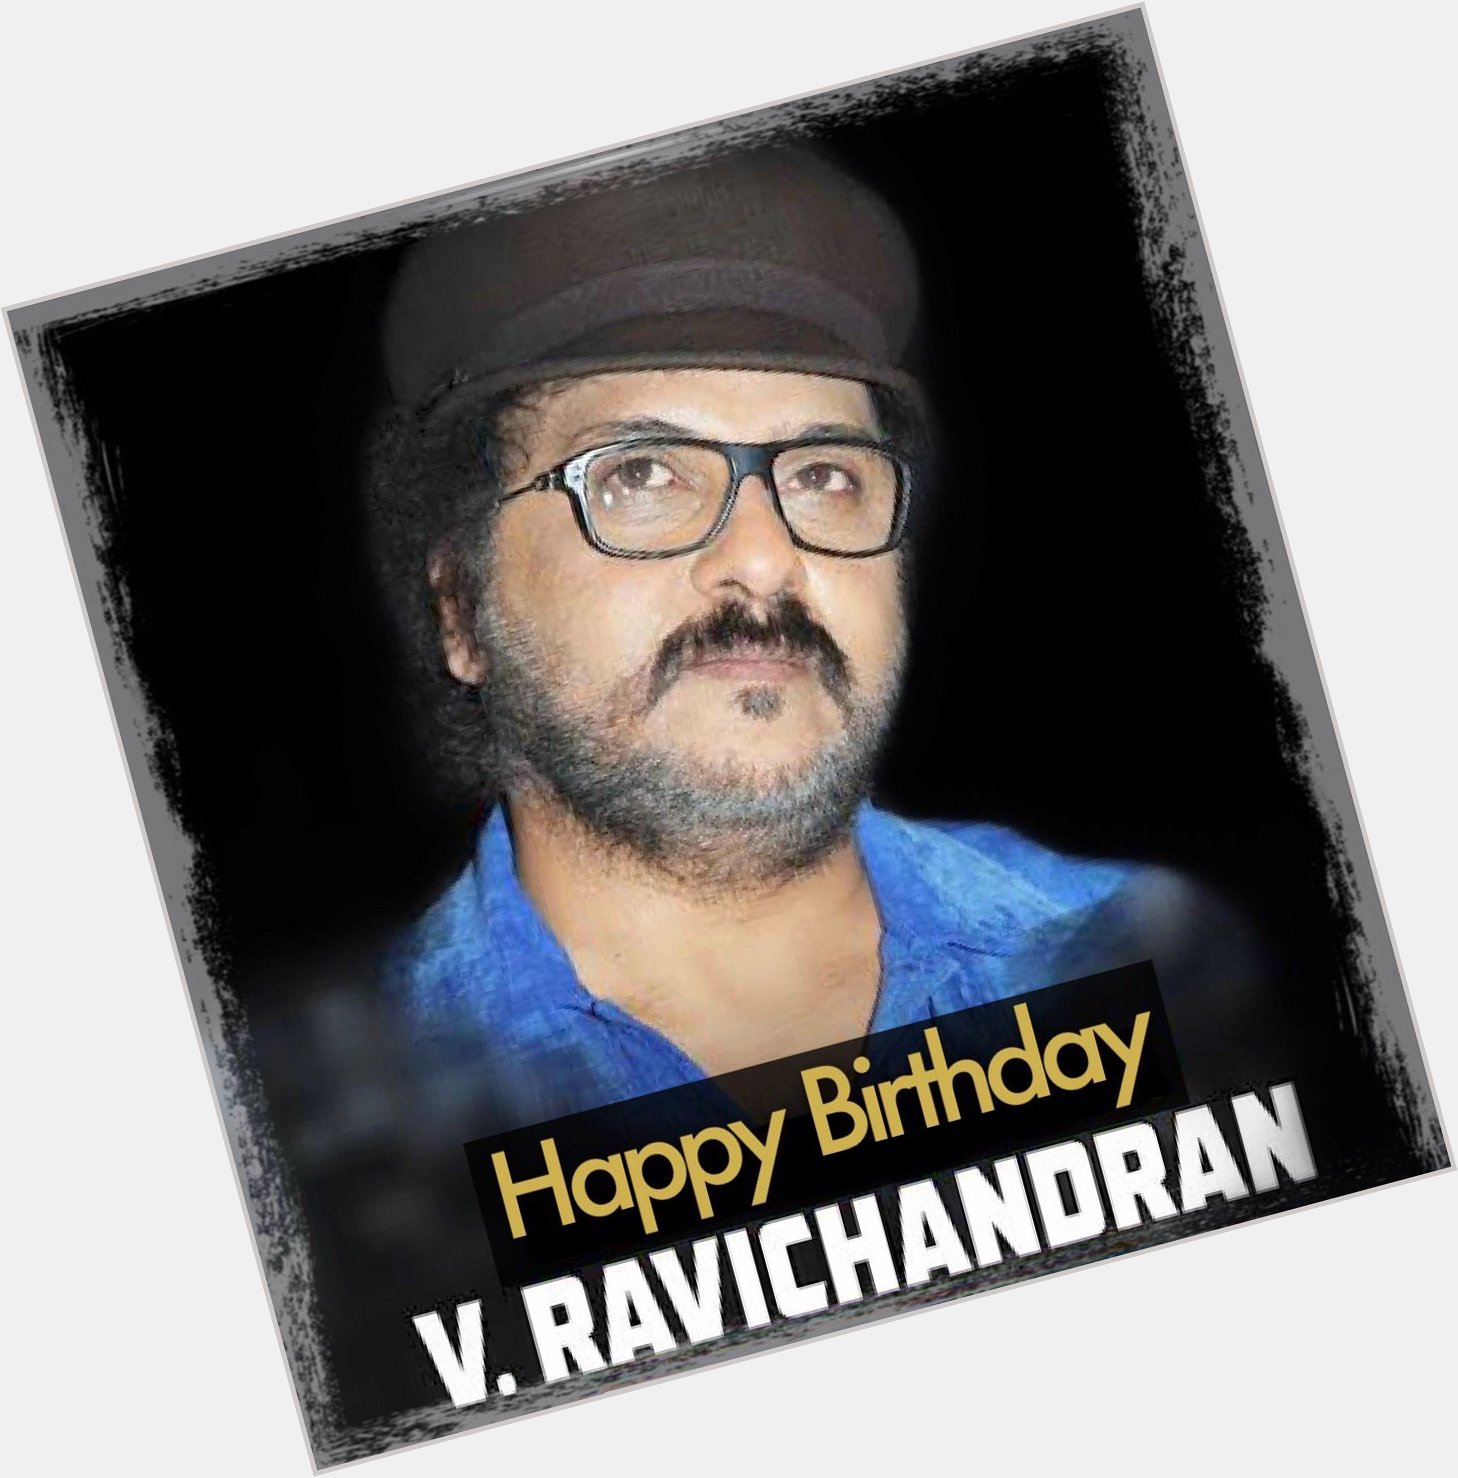 Wishing Sandalwood Showman, Crazy Star V.Ravichandran , a very Happy Birthday...  